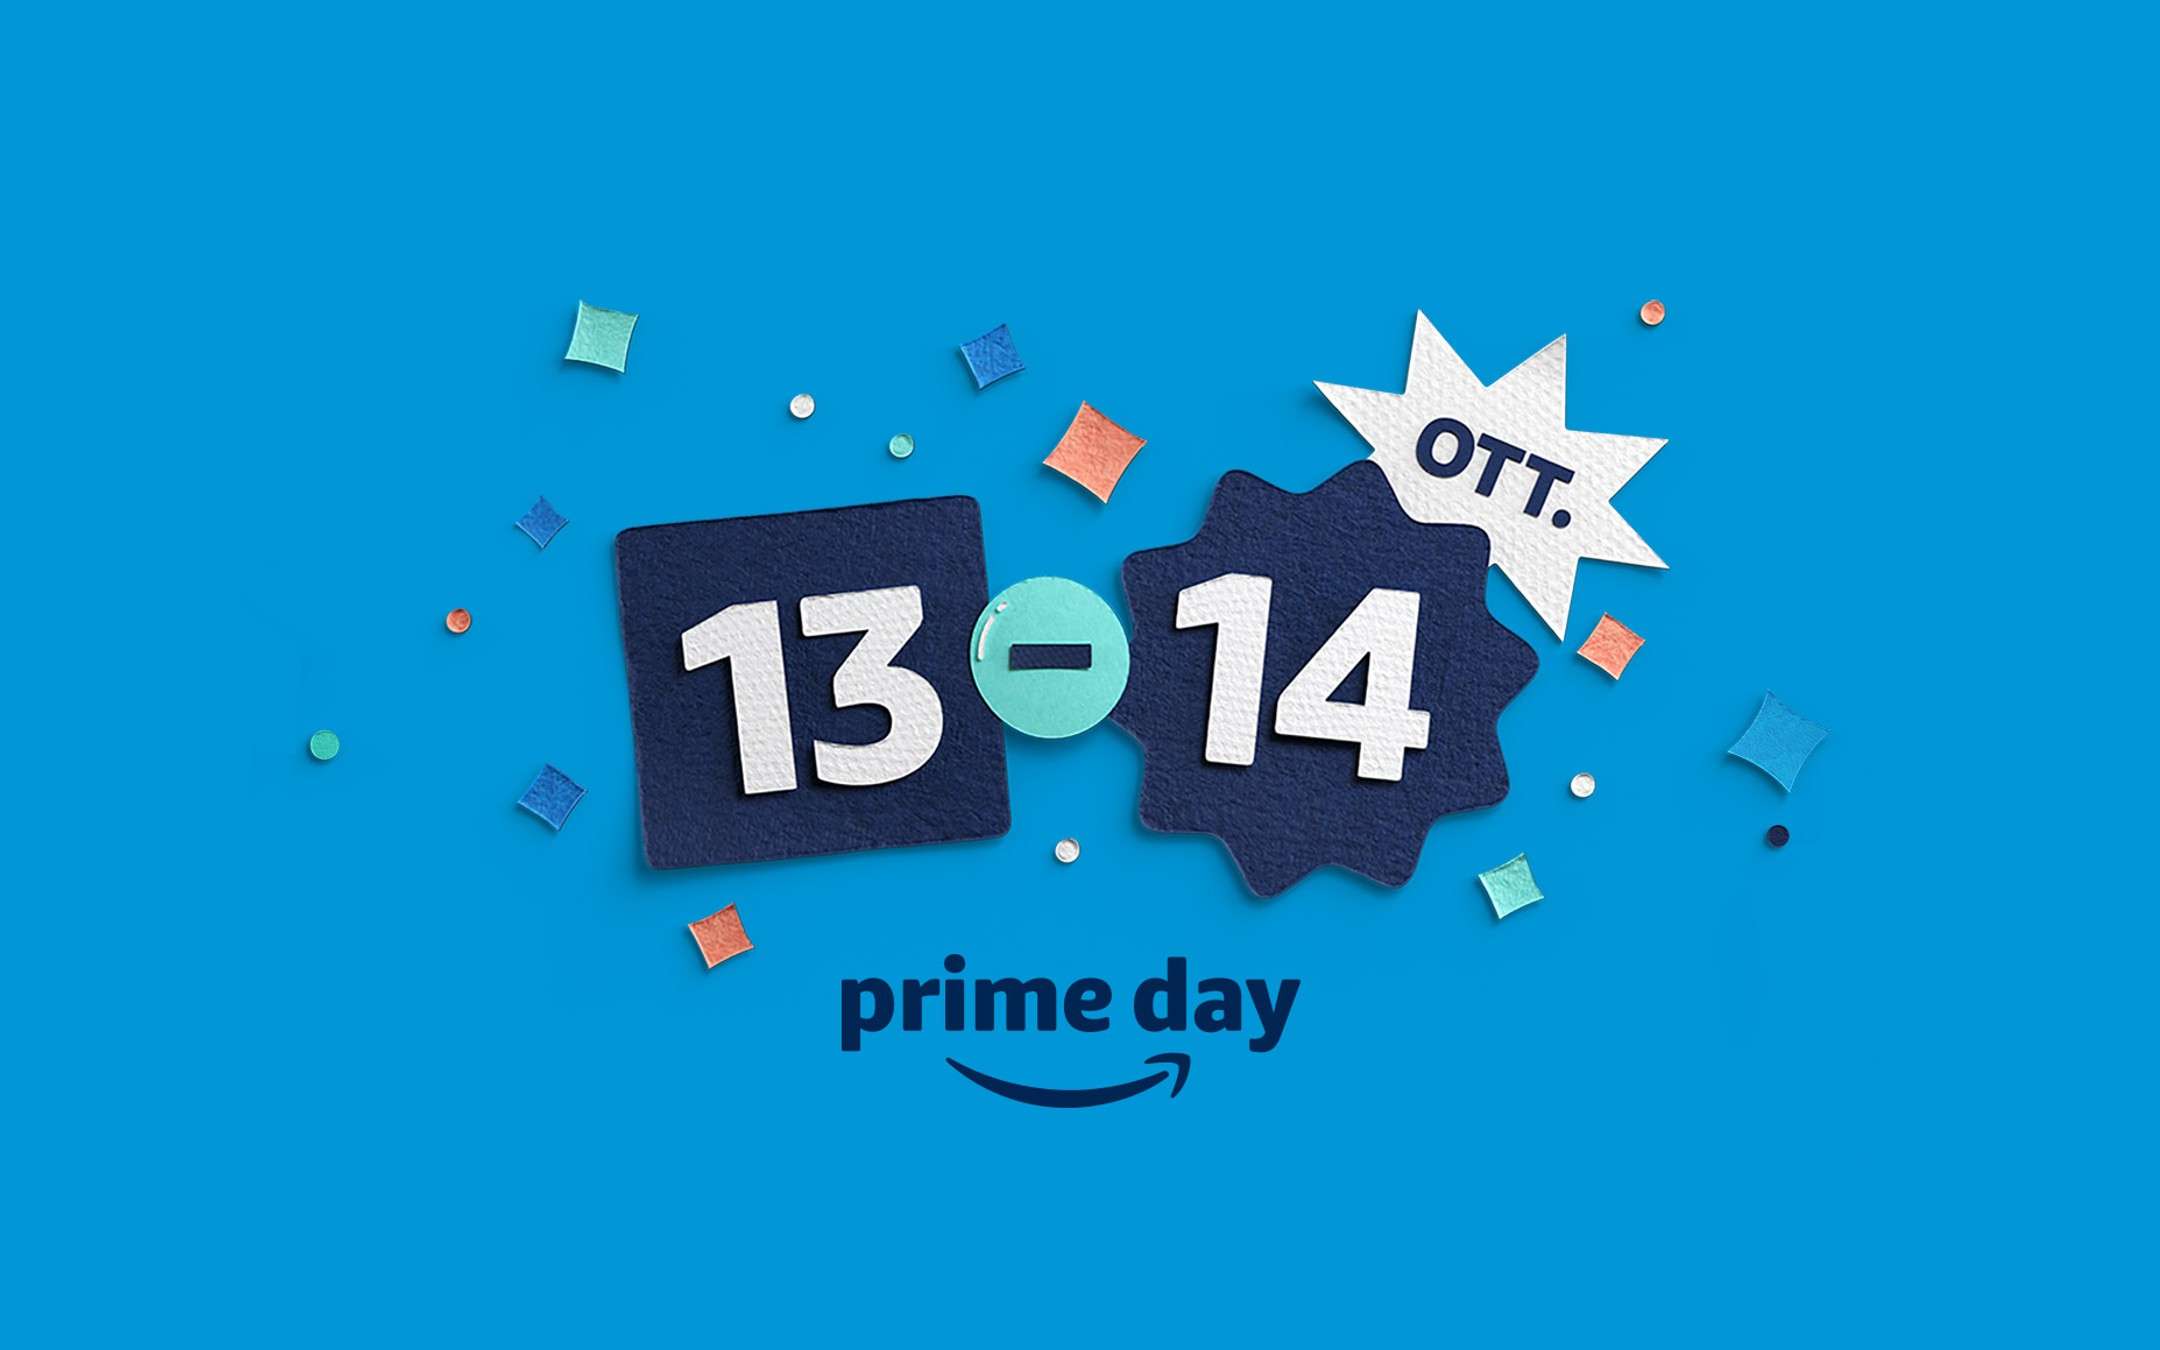 L'Amazon Prime Day 2020 è ufficiale: 13-14 ottobre